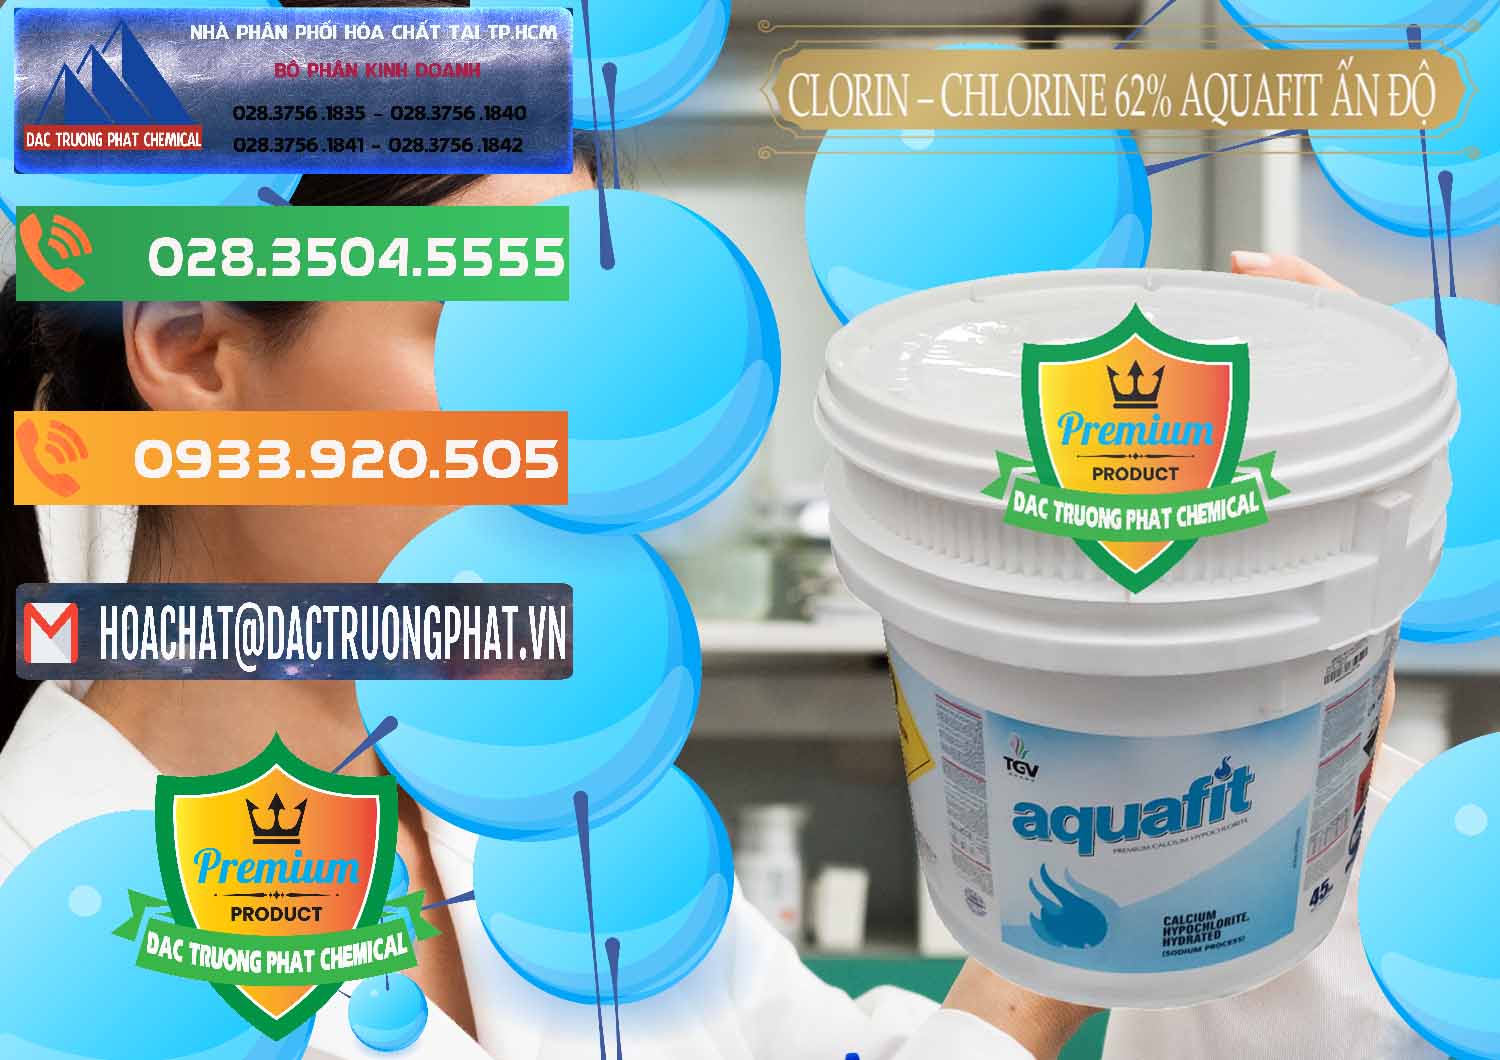 Chuyên bán _ phân phối Clorin - Chlorine 62% Aquafit Thùng Lùn Ấn Độ India - 0057 - Đơn vị chuyên bán & phân phối hóa chất tại TP.HCM - hoachatxulynuoc.com.vn